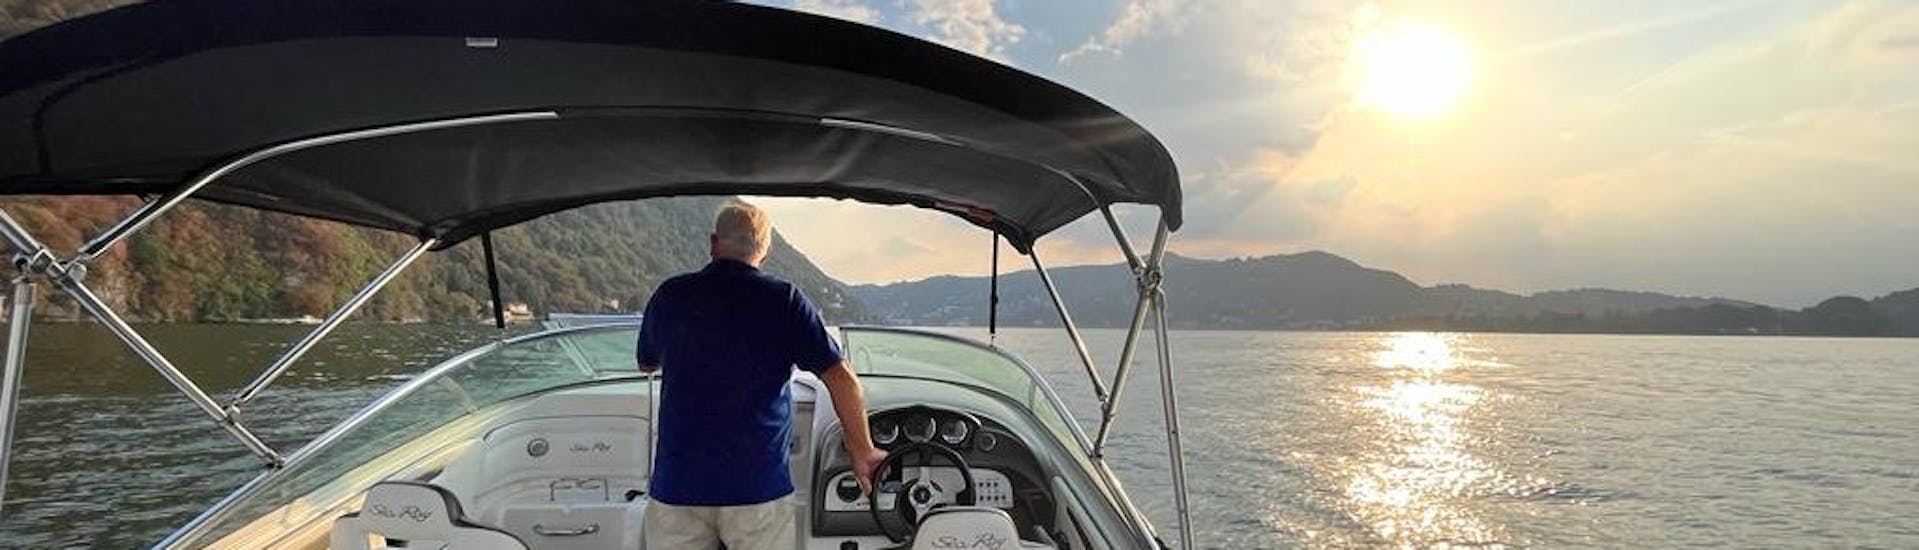 Paseo privado en barco desde Como por el Lago de Como.